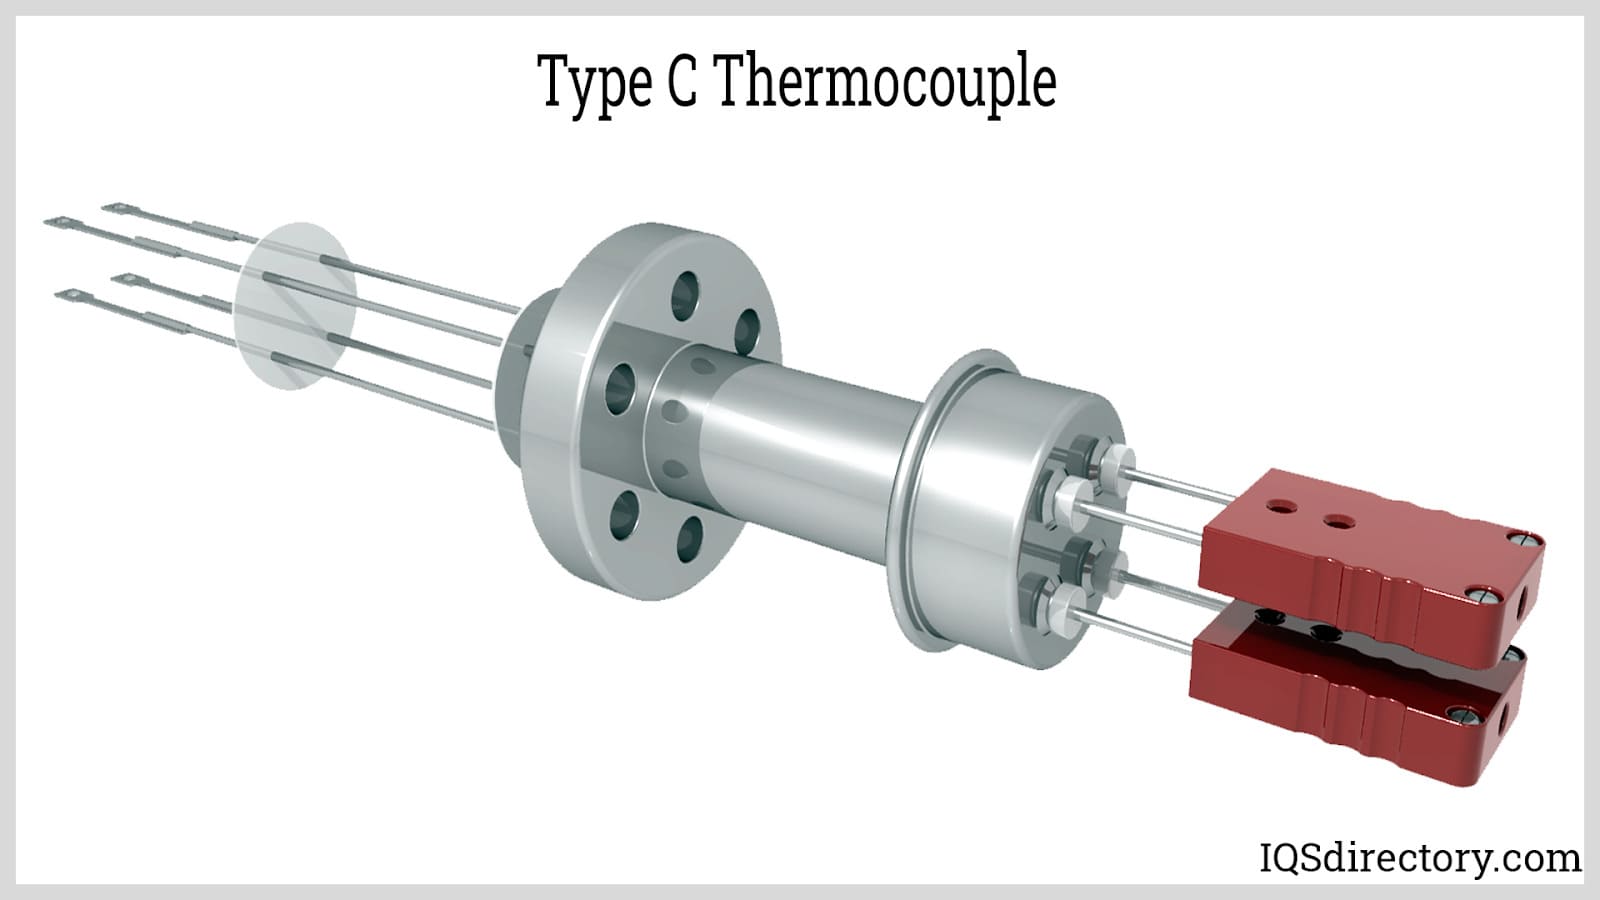 Type C Thermocouple